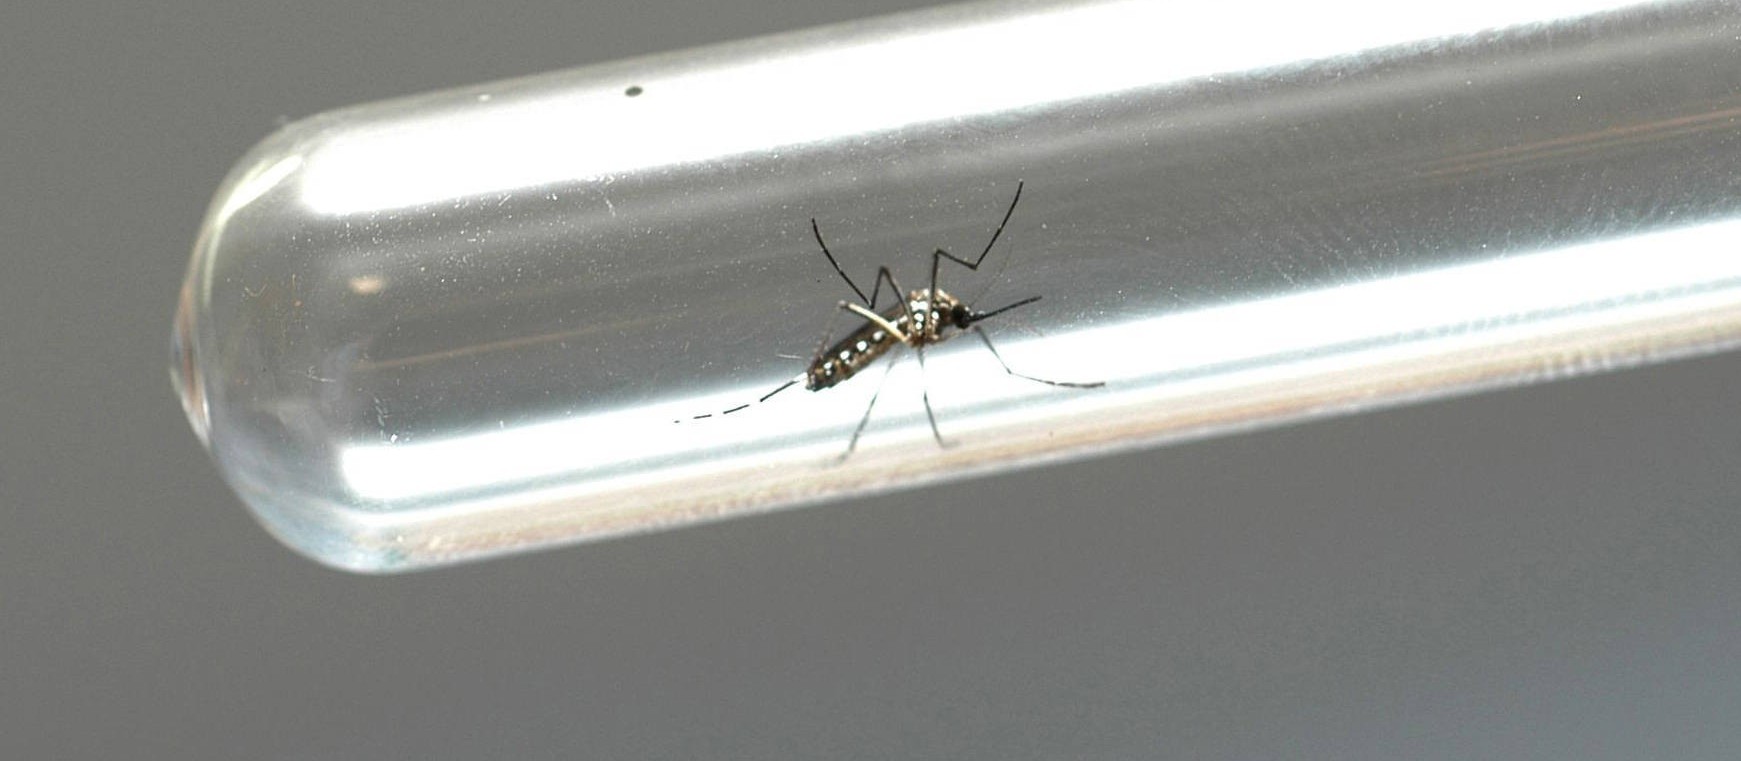 Índice de infestação predial de dengue em Maringá é de 0,6%